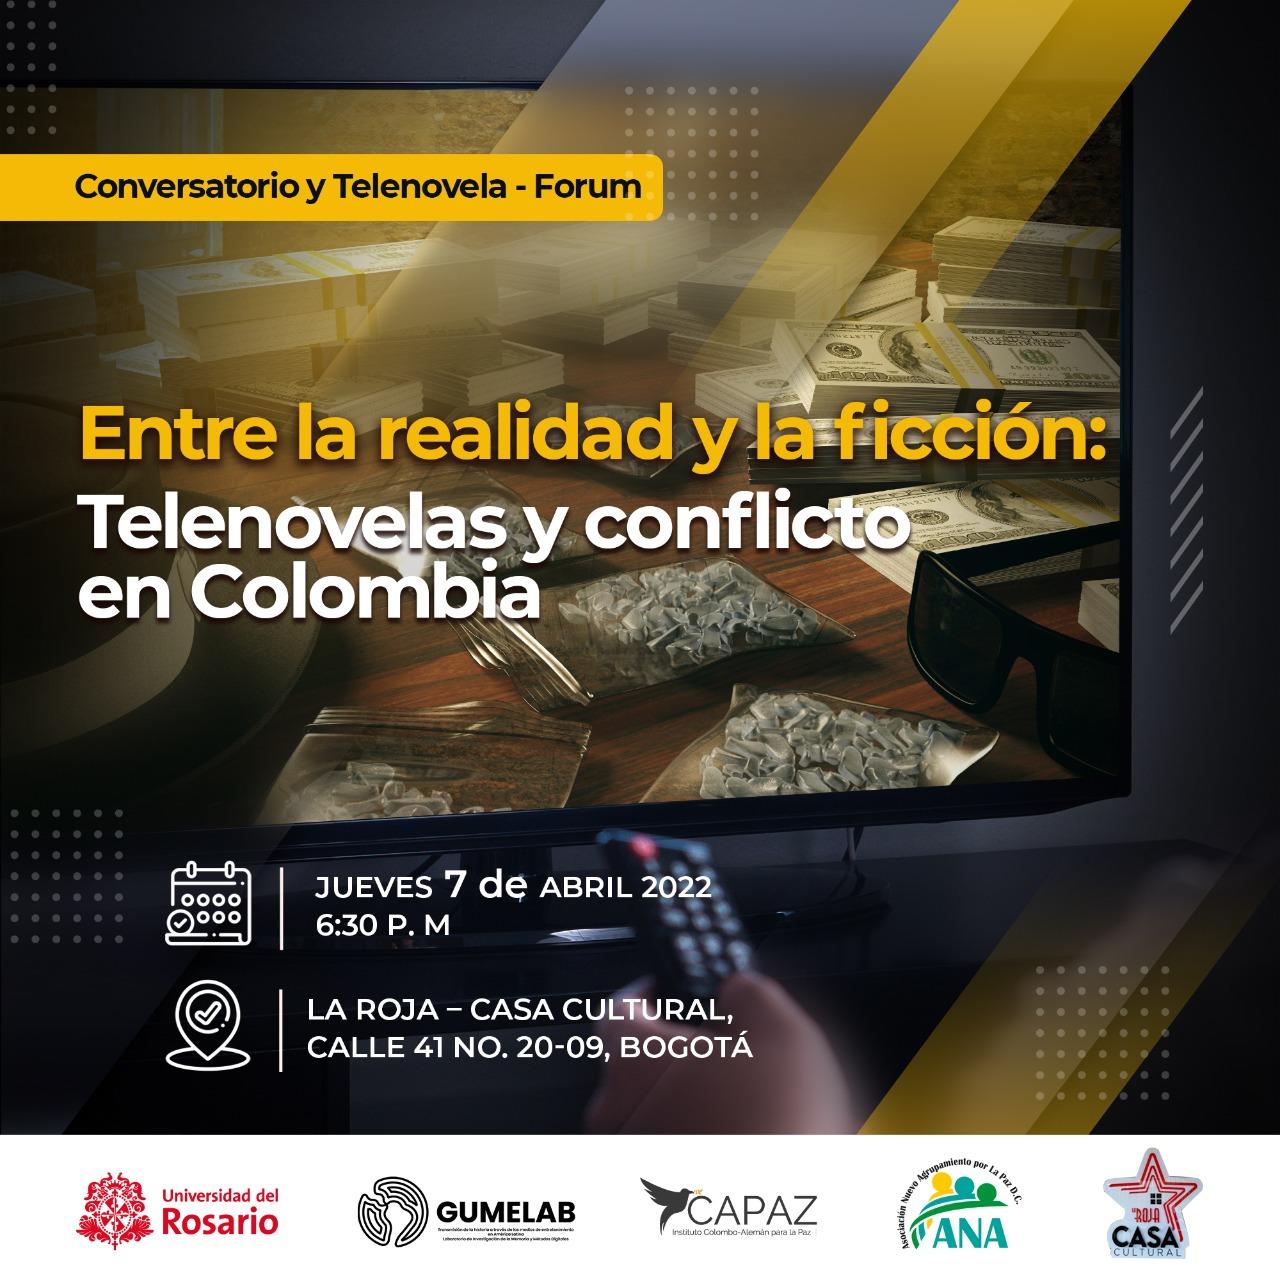 Forum for discussion and telenovelas: Entre la realidad y la ficción: Telenovelas y conflicto en Colombia, 07.04.22